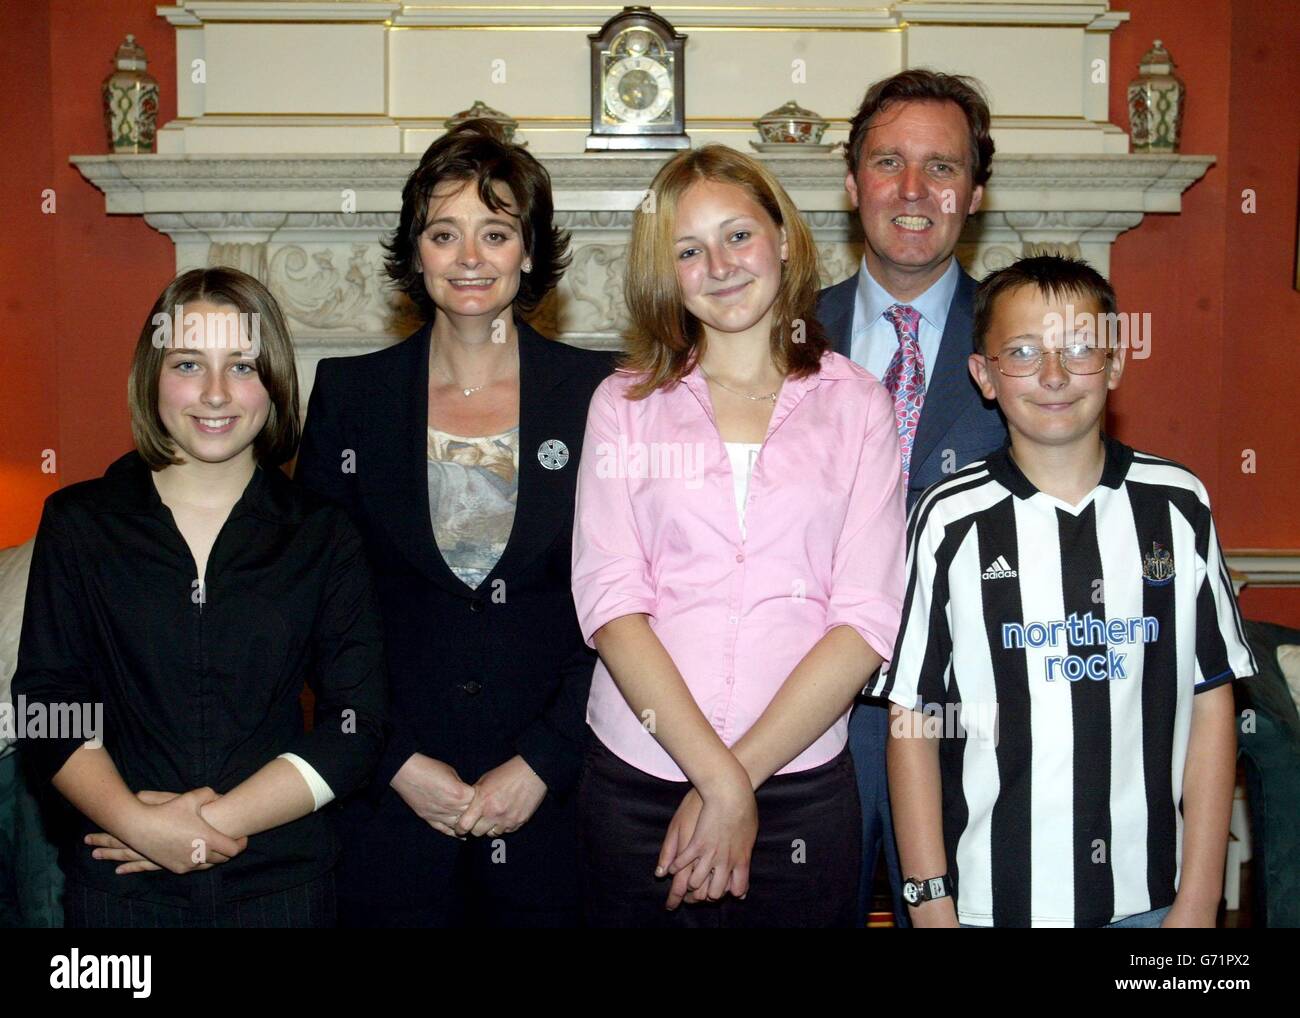 De gauche à droite - Ashleigh Trevarrow, épouse du Premier ministre Cherie Blair, Sam Pitchford, Alan Milburn MP et Joe Jackson de Darlington, lors d'une fête de thé au 10 Downing Street à Londres. Banque D'Images